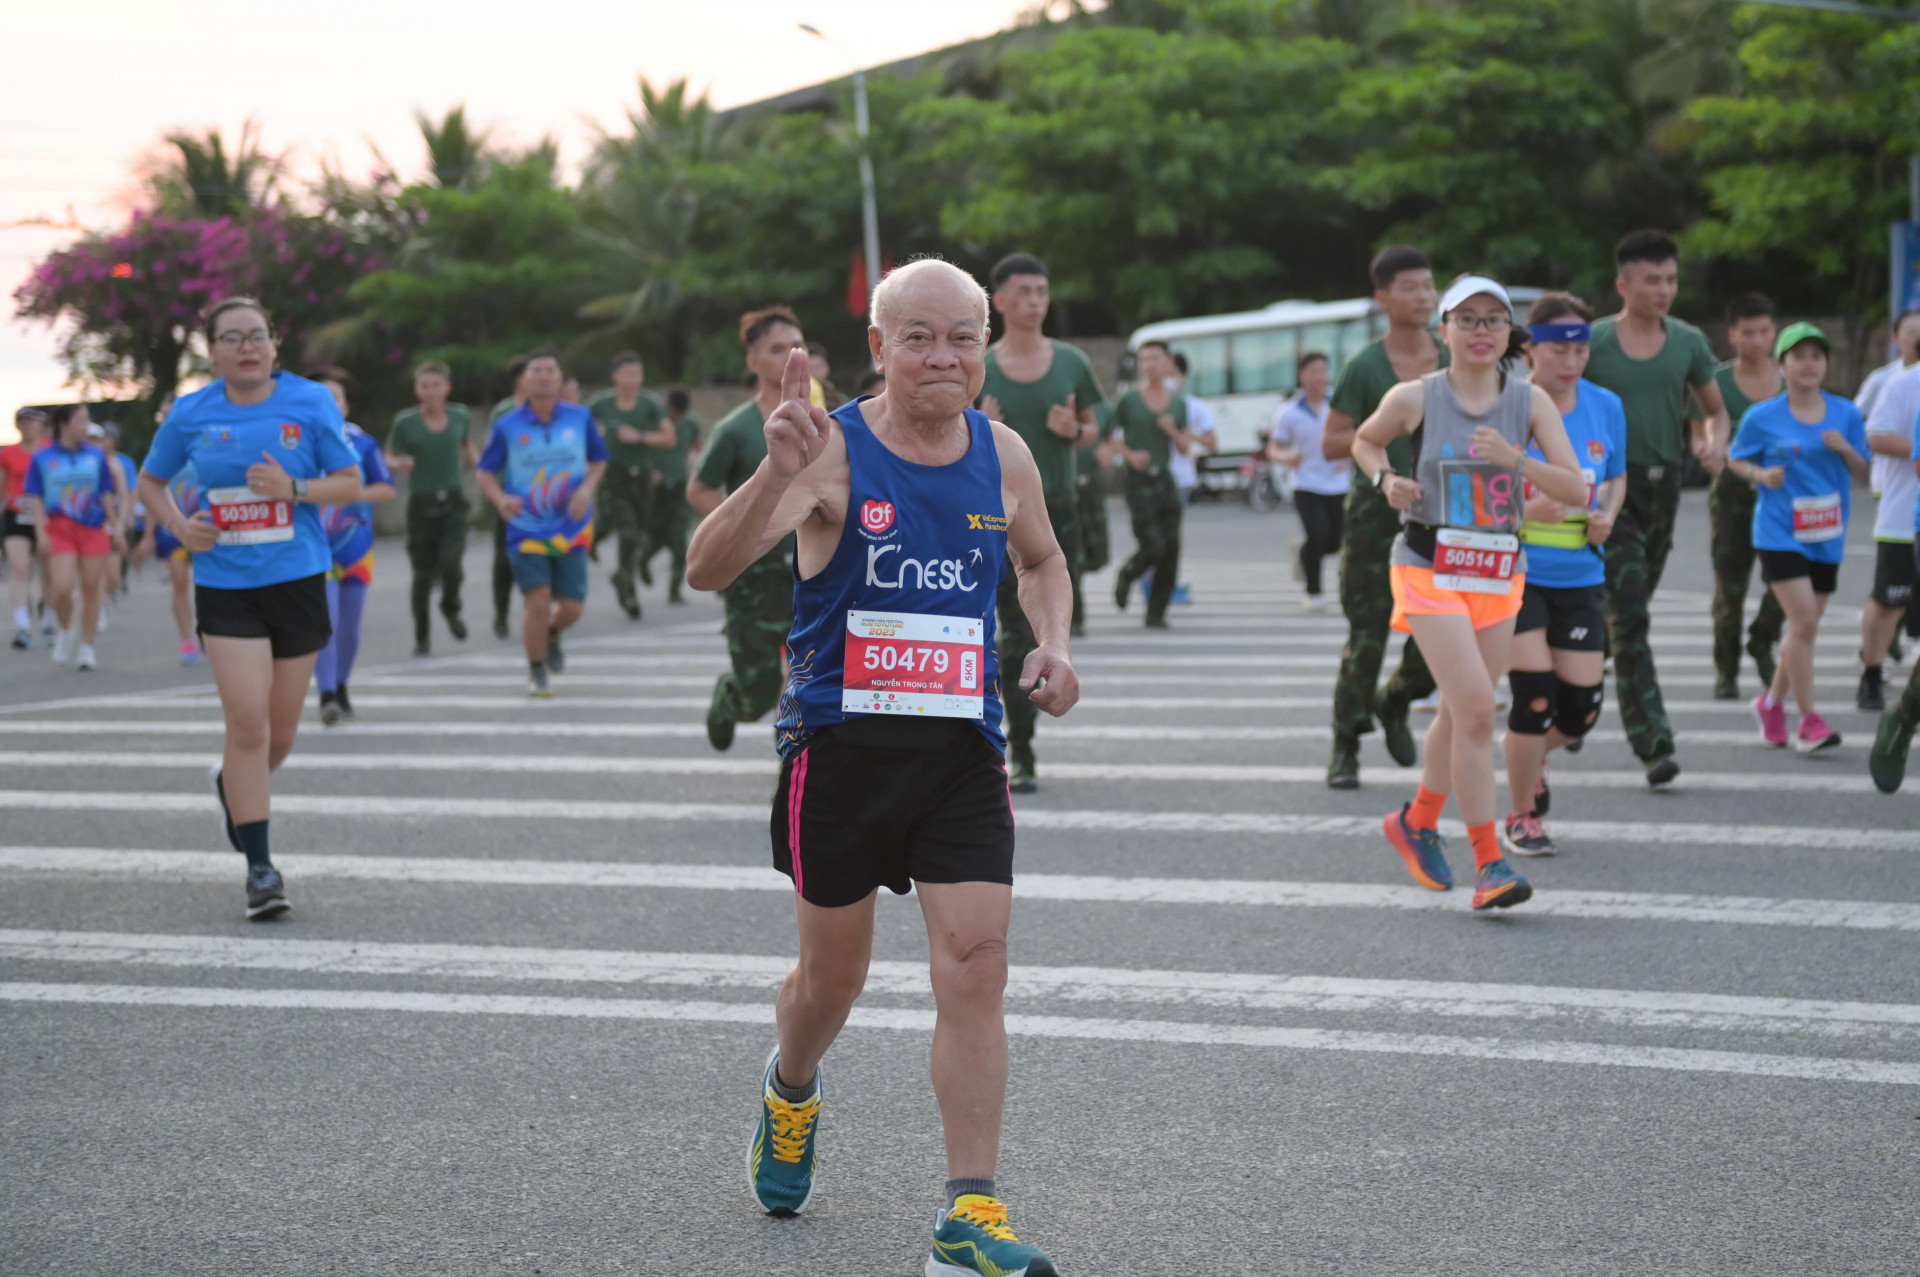 Một vận động viên 85 tuổi tham gia và hoàn thành nội dung chạy 5km.